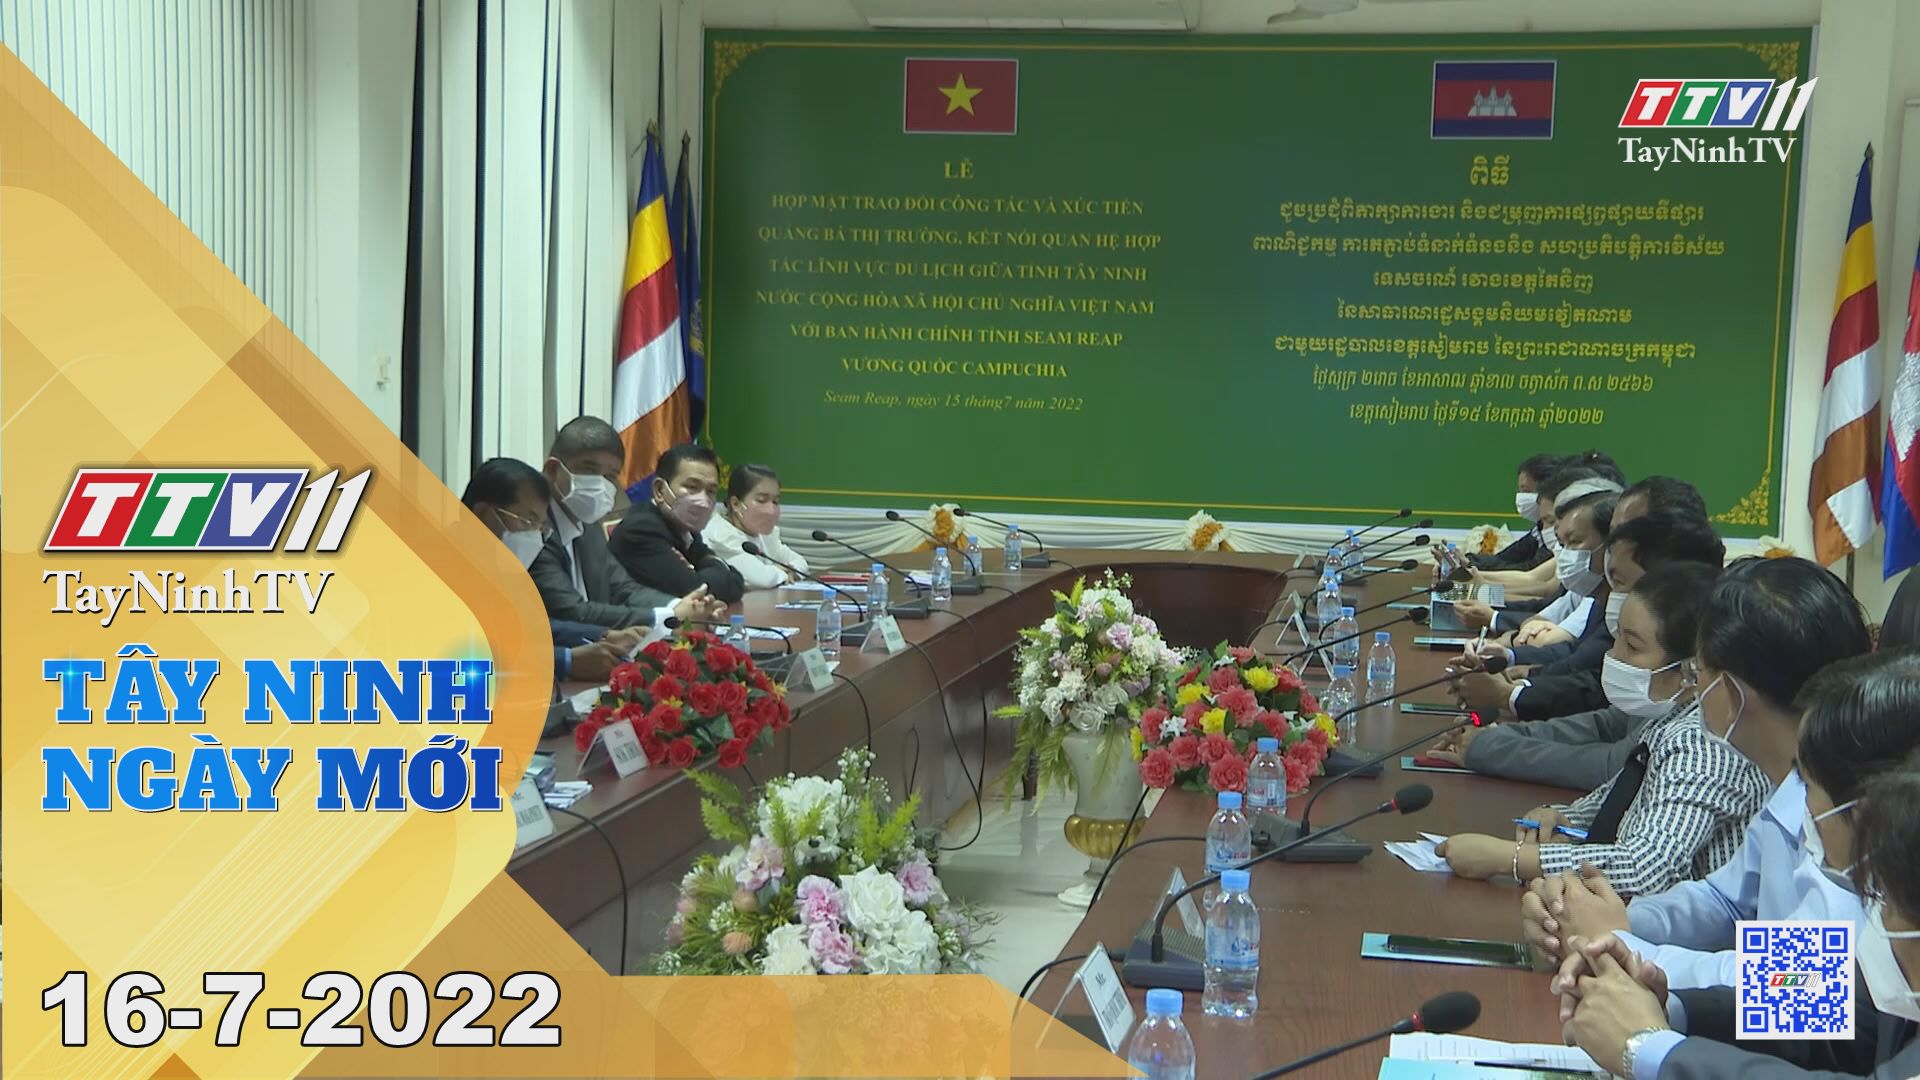 Tây Ninh ngày mới 16-7-2022 | Tin tức hôm nay | TayNinhTV